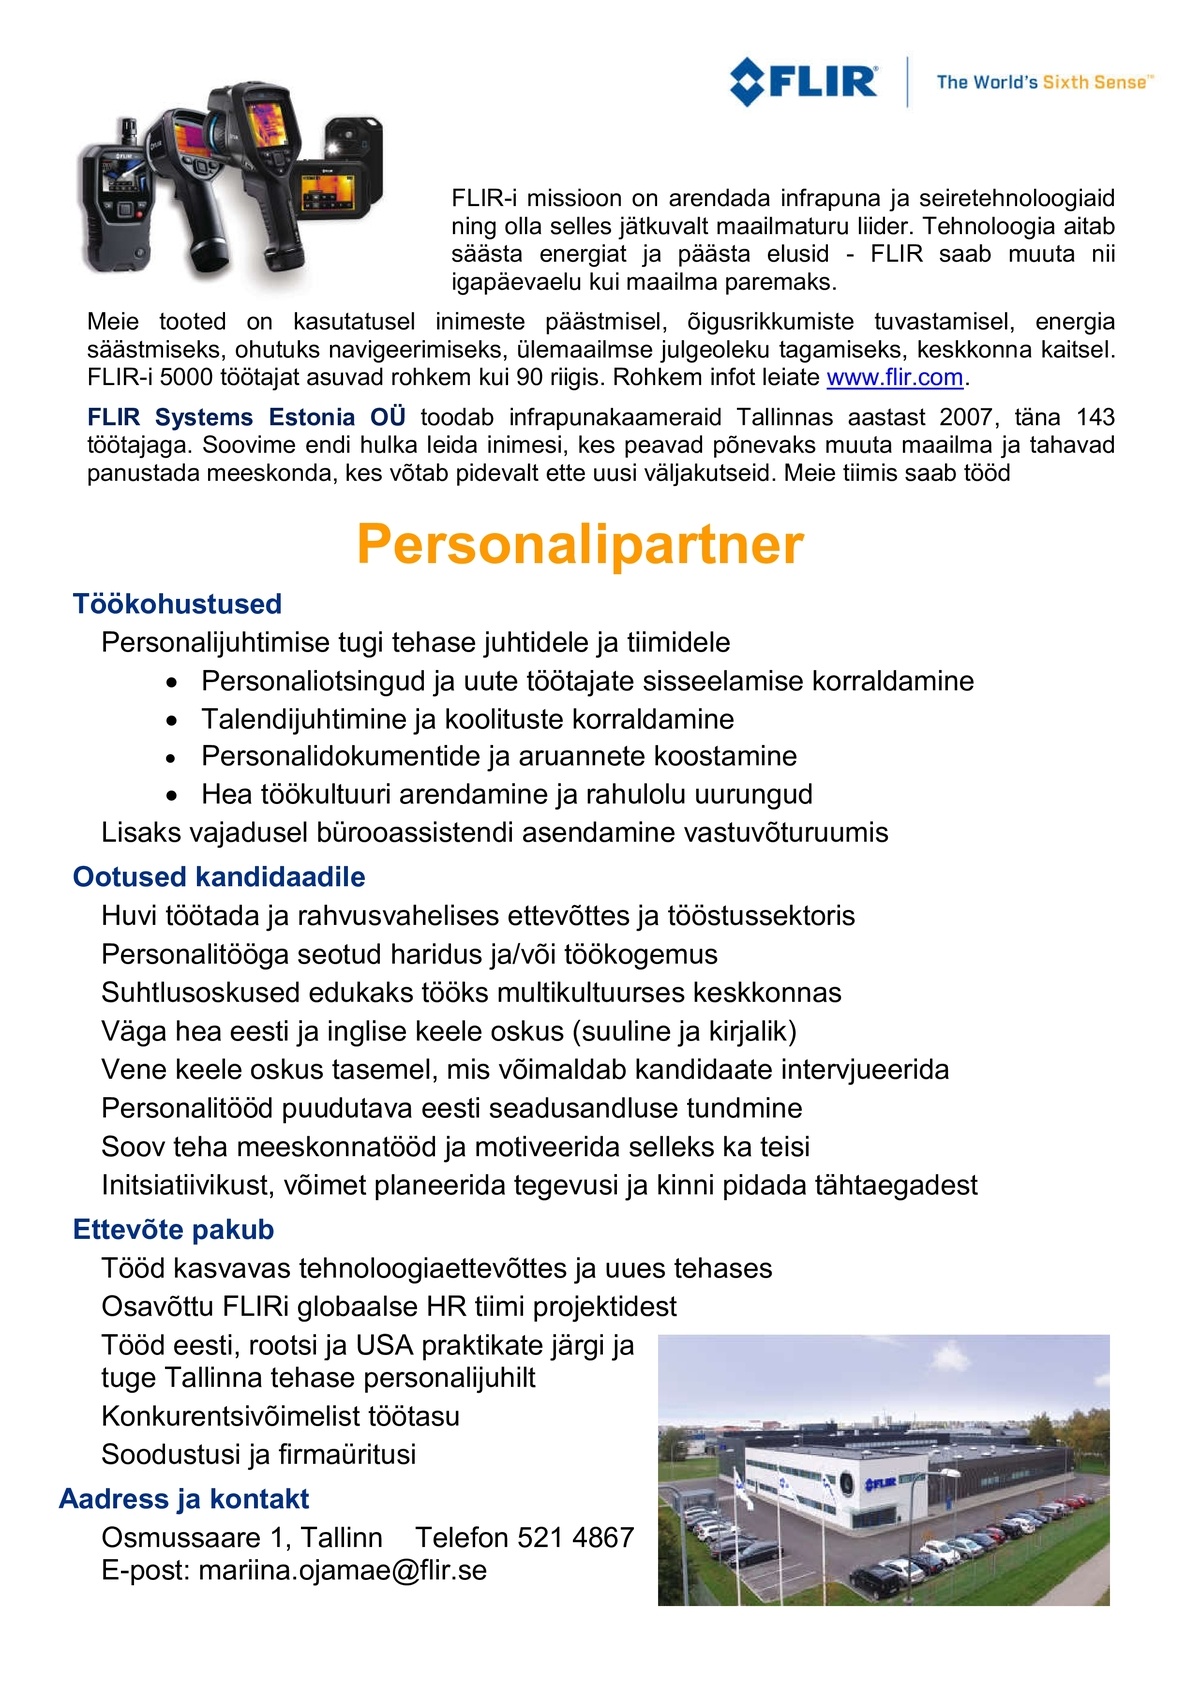 FLIR Systems Estonia OÜ Personalipartner